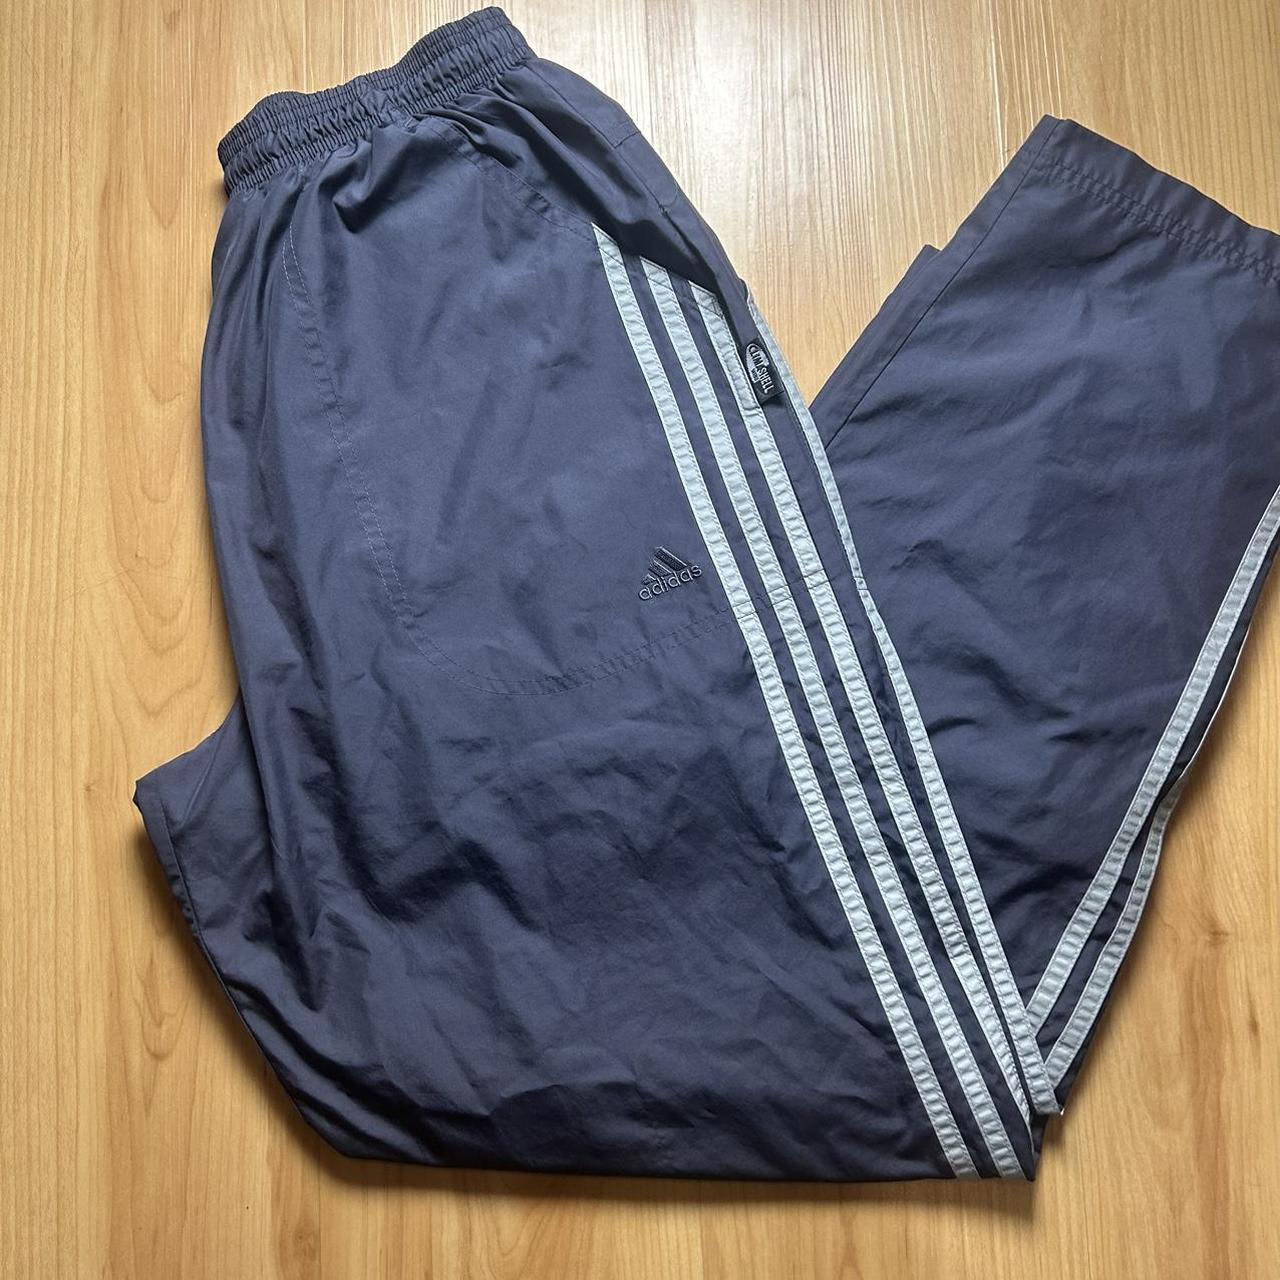 Vintage 90’s Adidas track pants Size:Men’s M Waste... - Depop